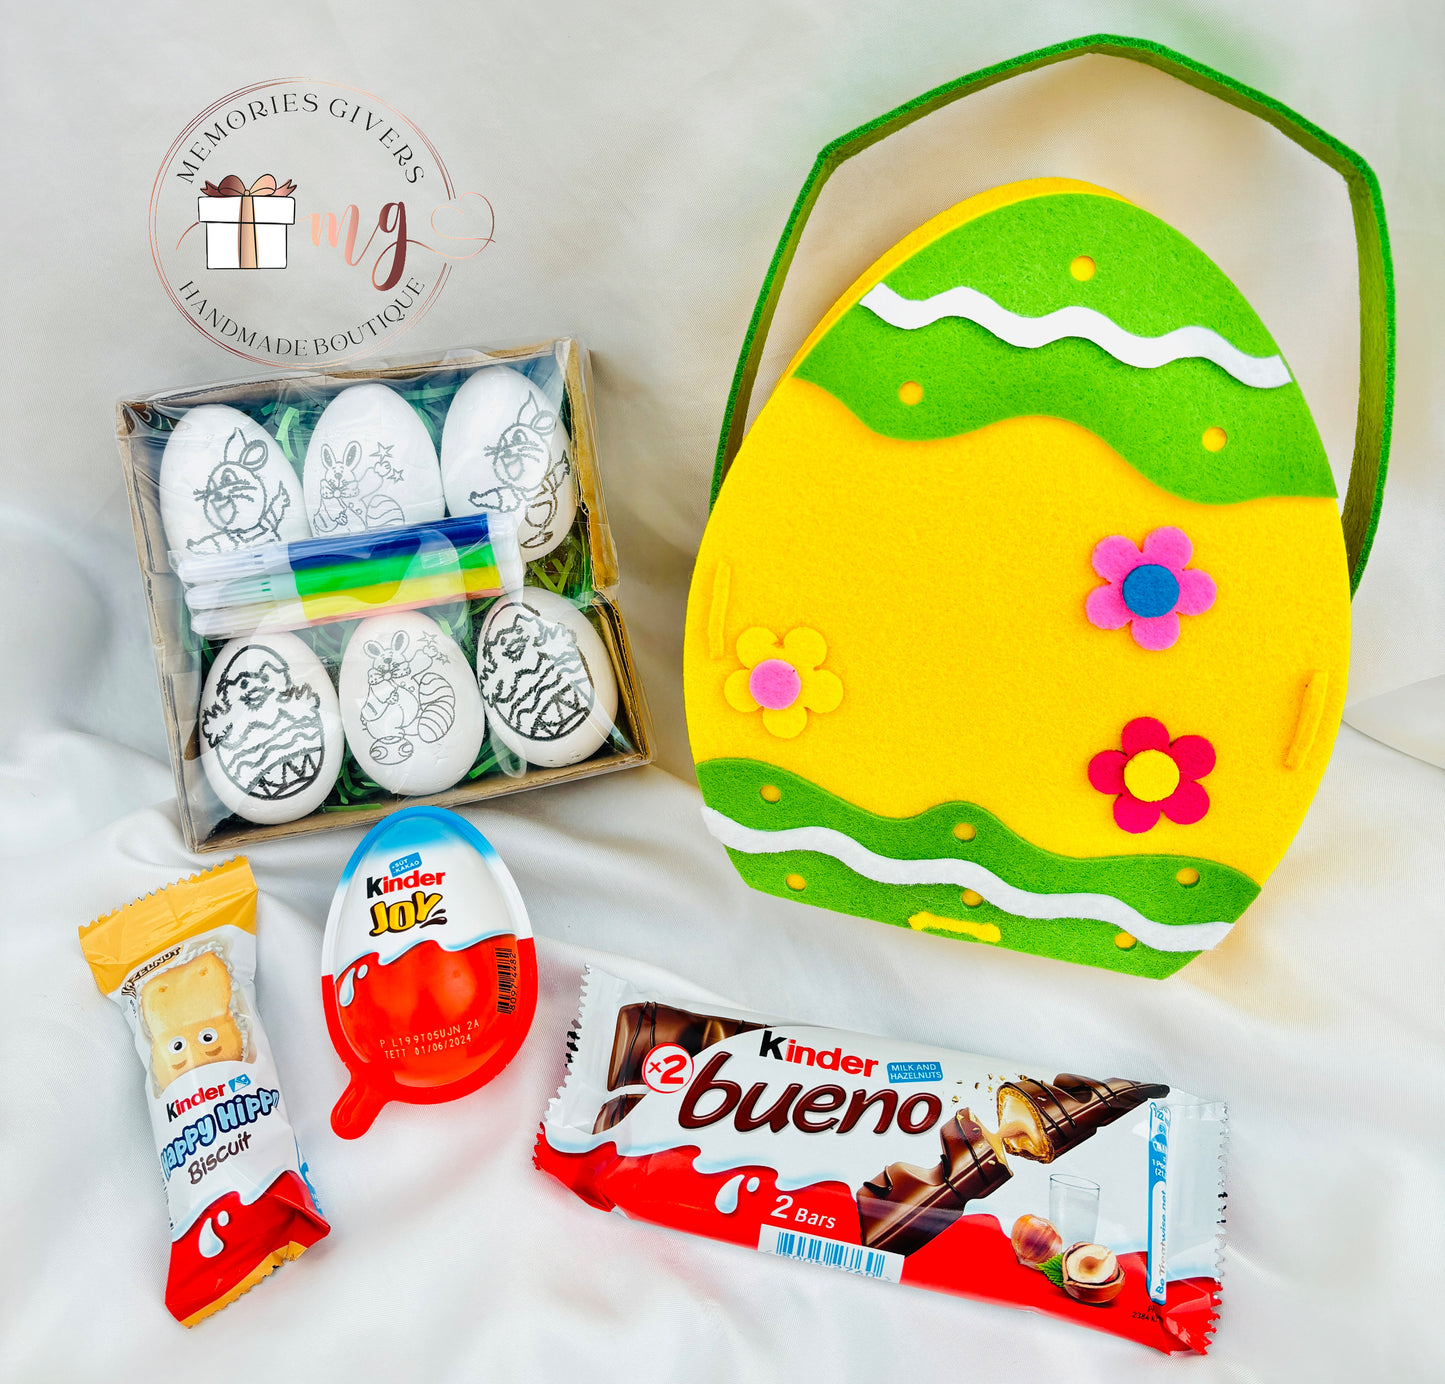 Coșuleț pentru copii cu dulciuri și ouă de colorat